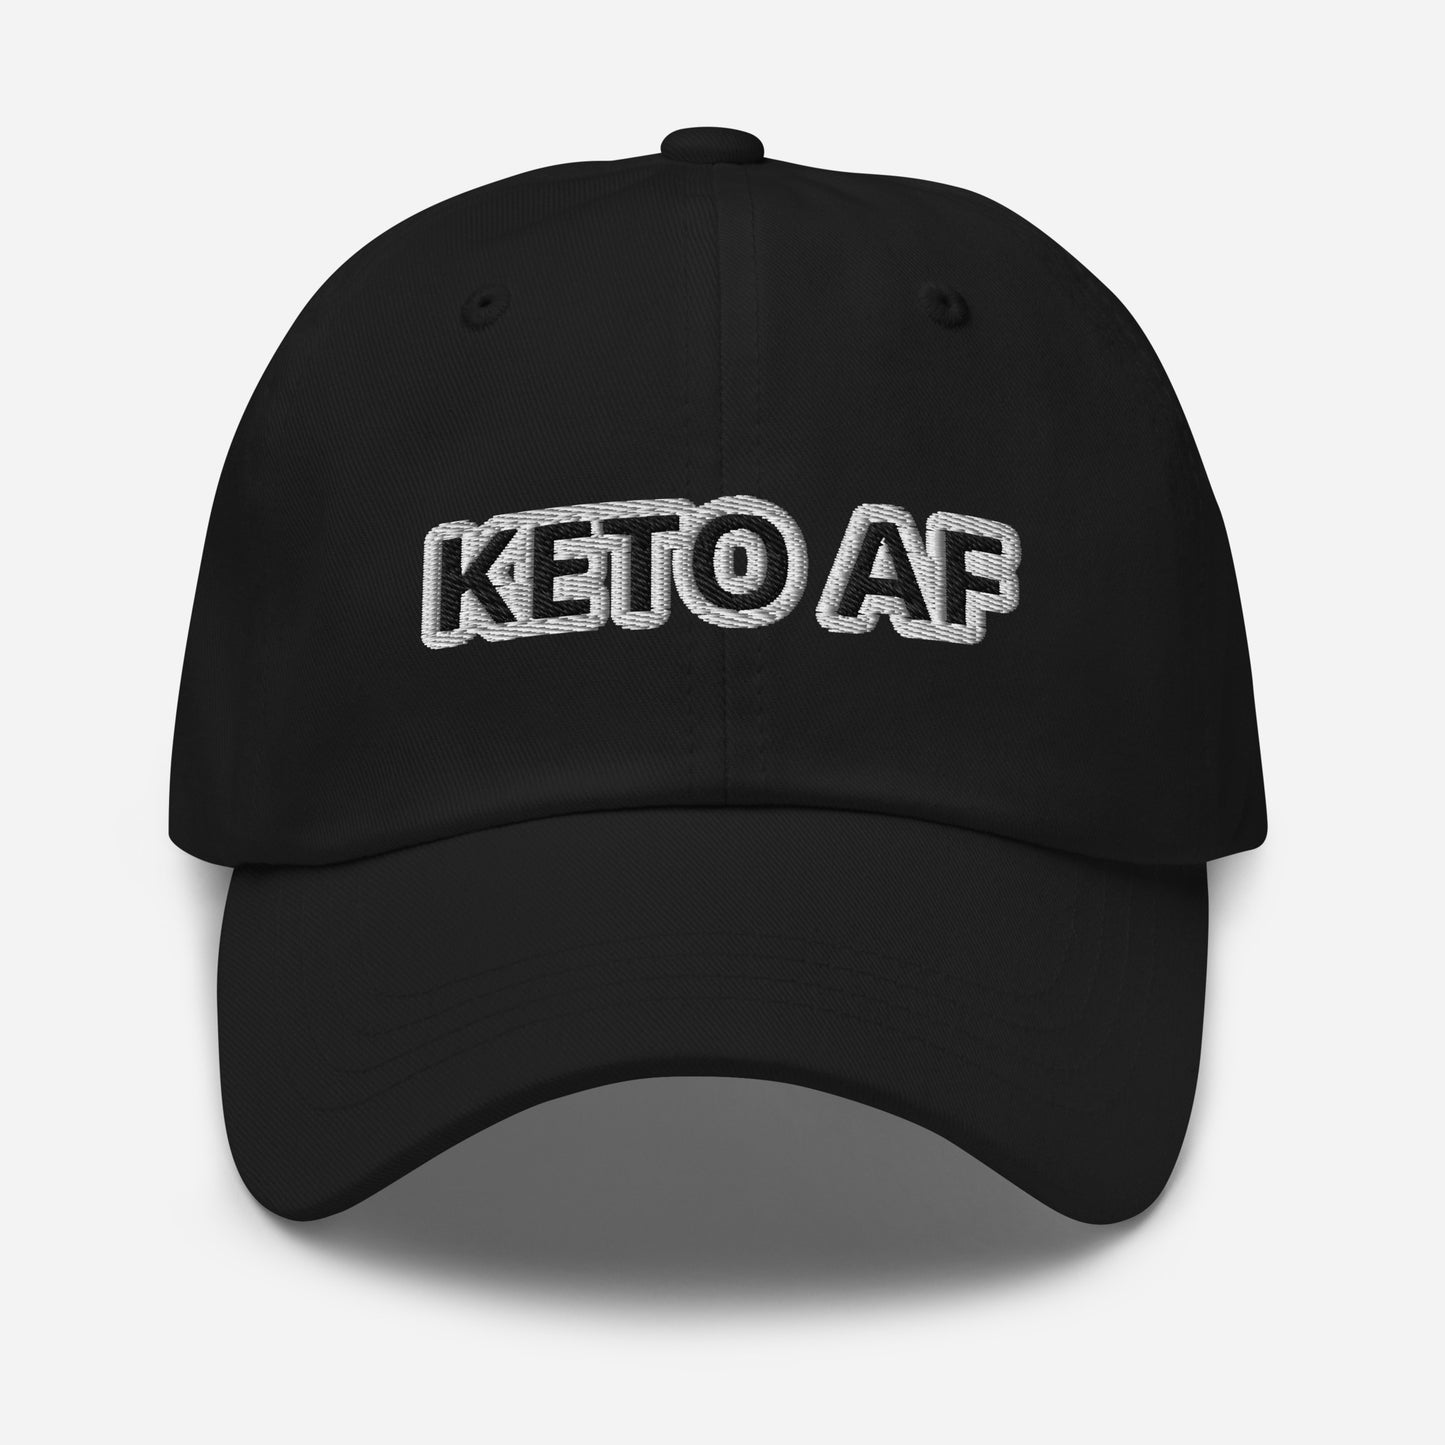 KETO AF Dad hat